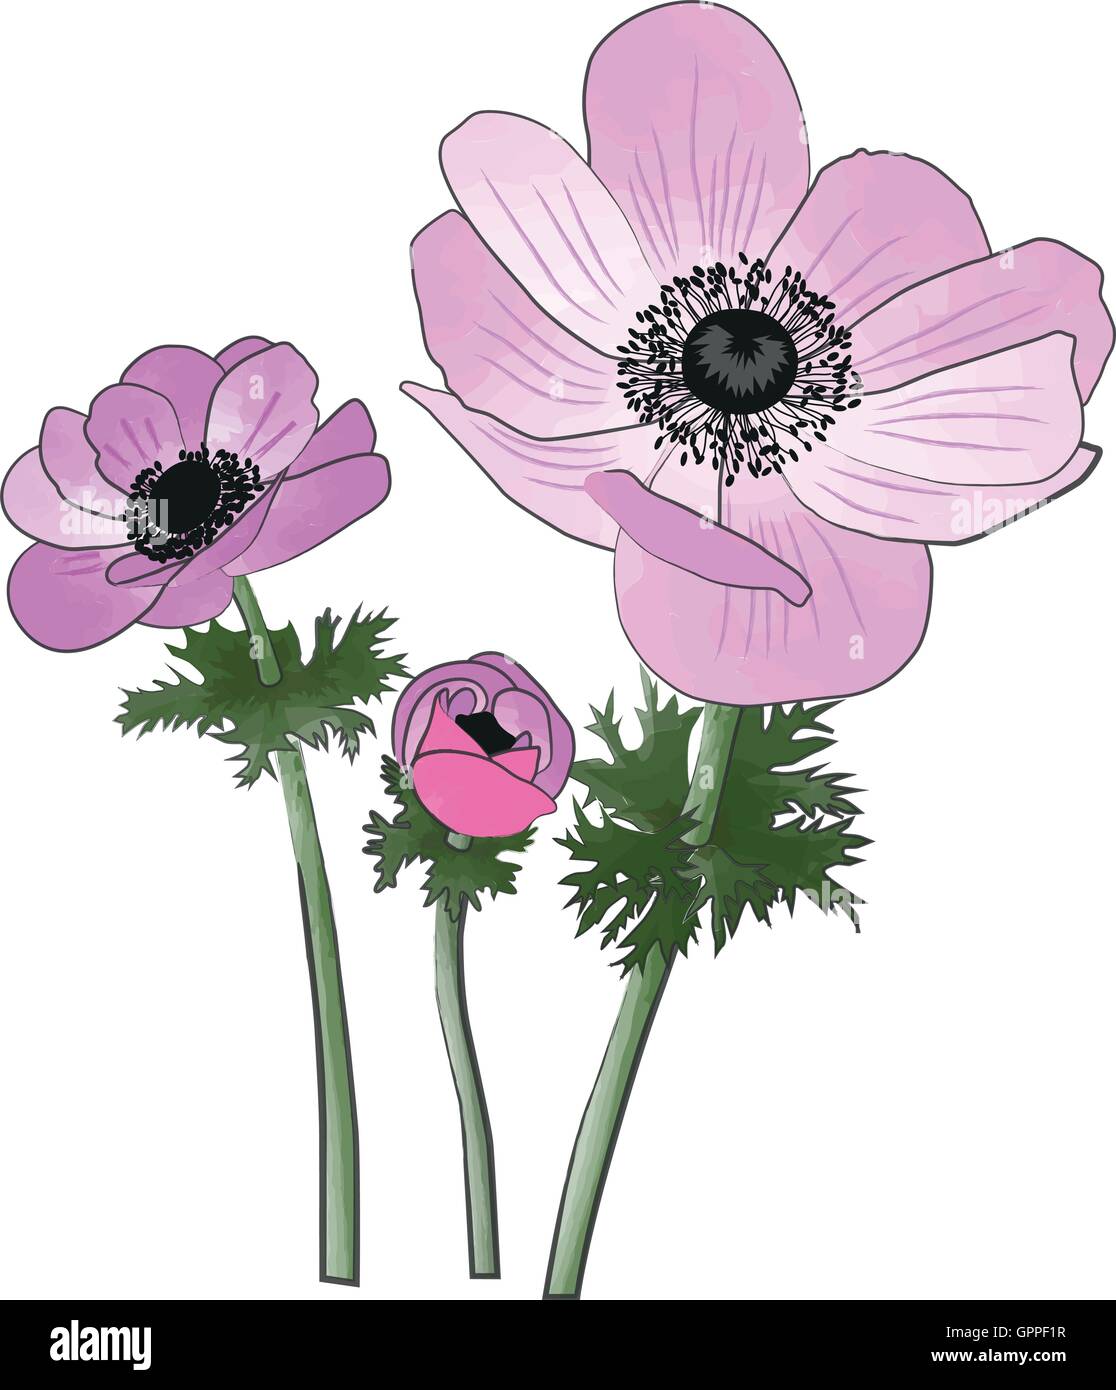 Anemoni fiori di primavera acquarello e inchiostro imitazione di verniciatura Illustrazione Vettoriale